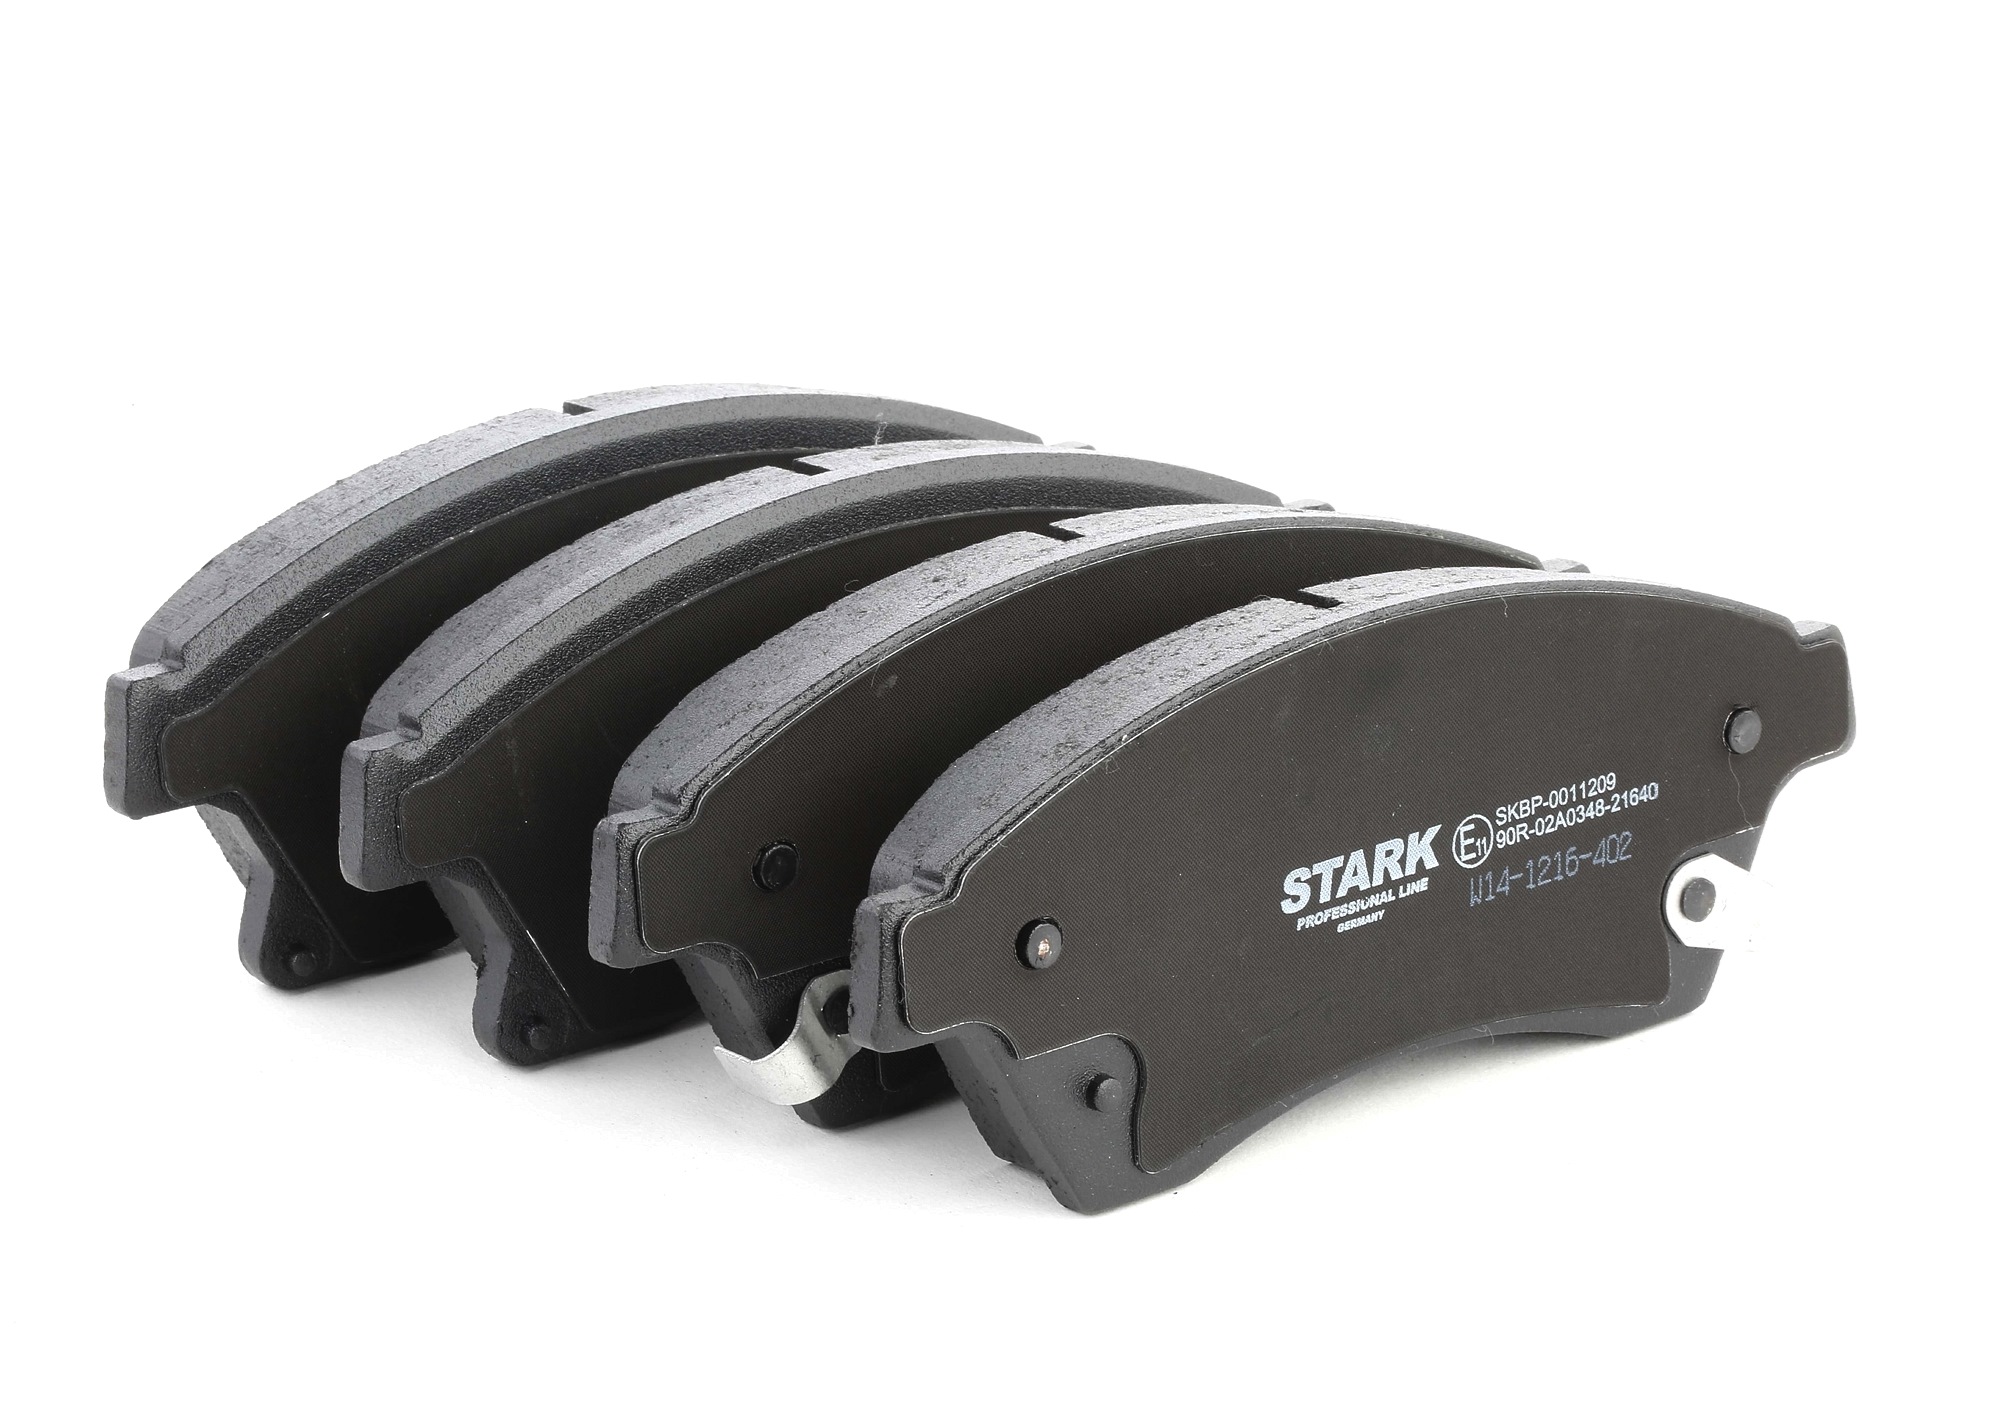 SKBP-0011209 STARK Pasticche dei freni OPEL Assale anteriore, con segnalatore acustico usura